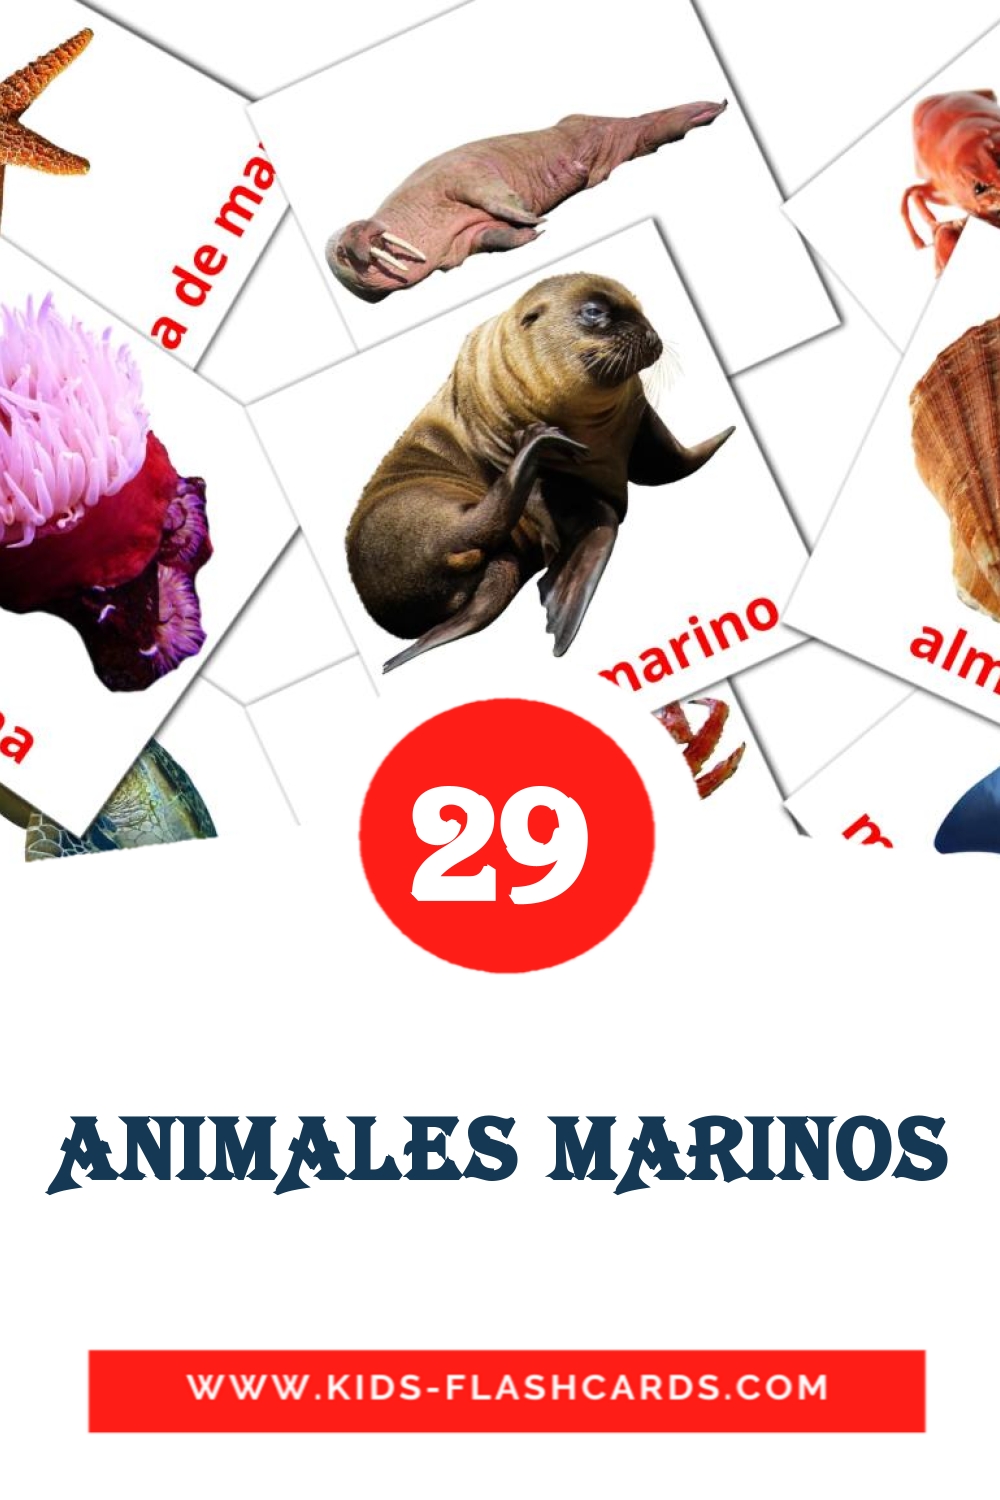 29 ANIMALES MARINOS fotokaarten voor kleuters in het ahmaric